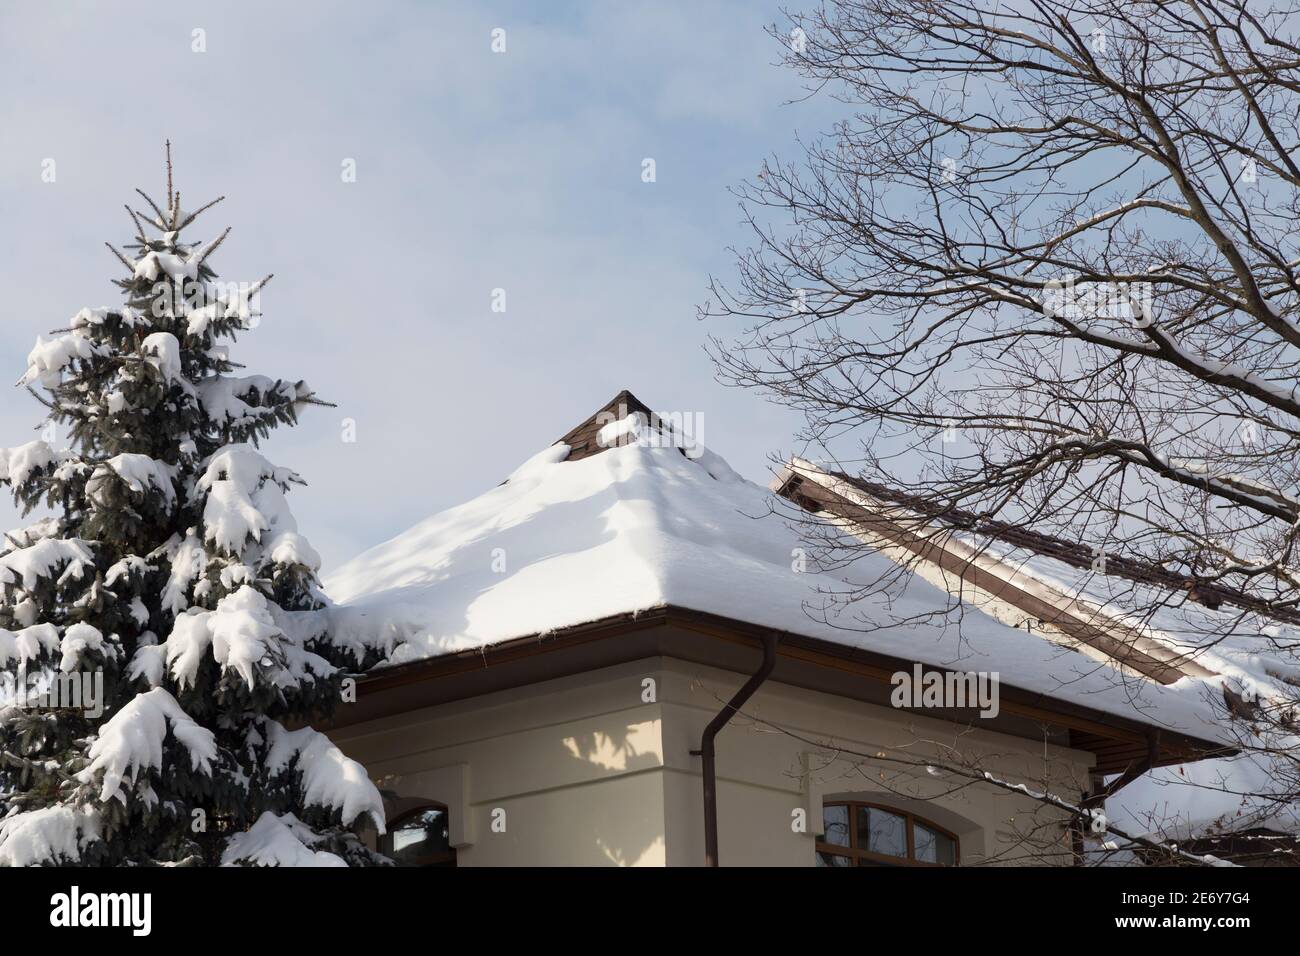 Neve sul tetto e il cielo nuvoloso. L'immagine contiene un abete rosso coperto di neve e un albero senza foglie. Foto Stock